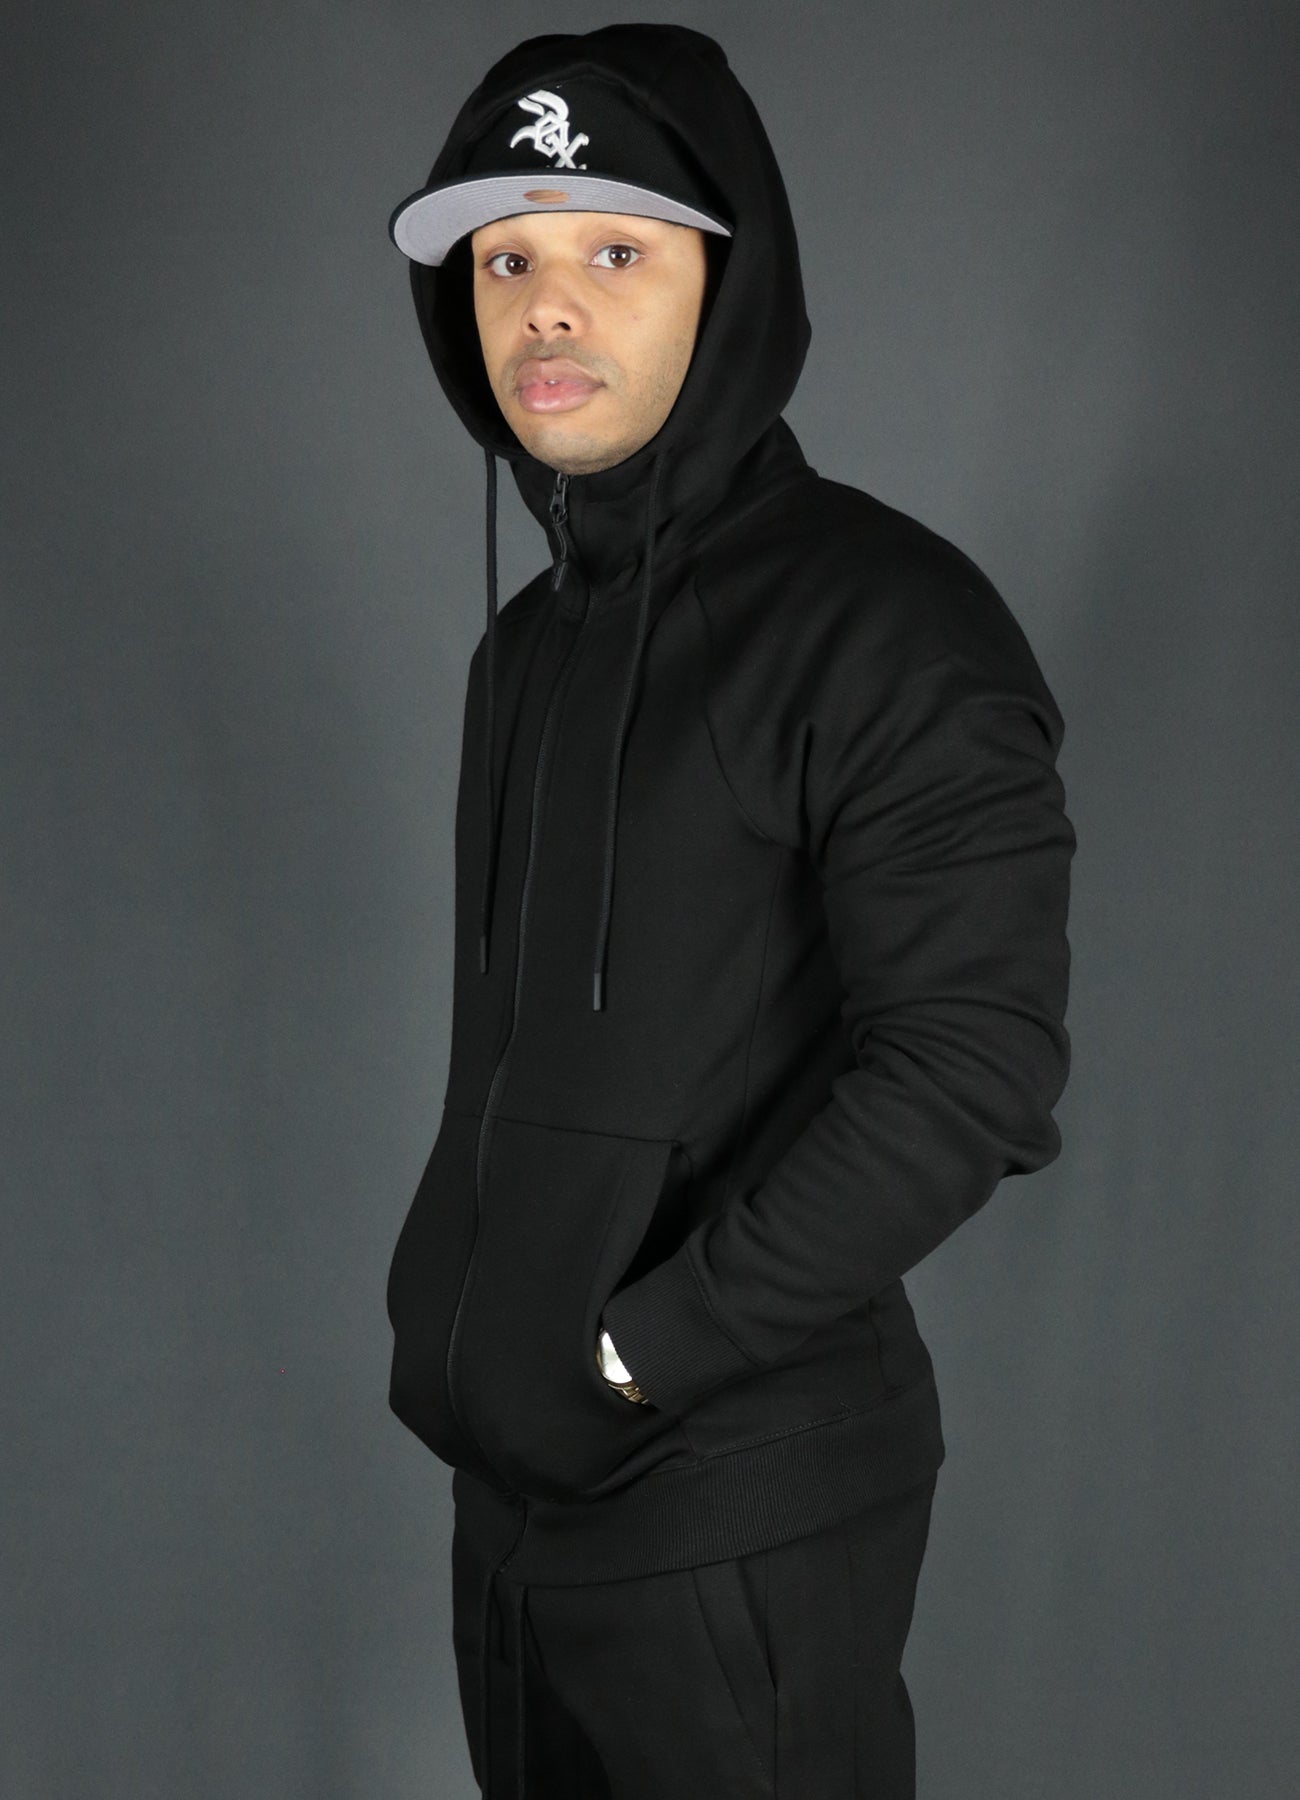 A model wearing the black zipup hoodie by Jordan Craig with the black Jordan Craig joggers.